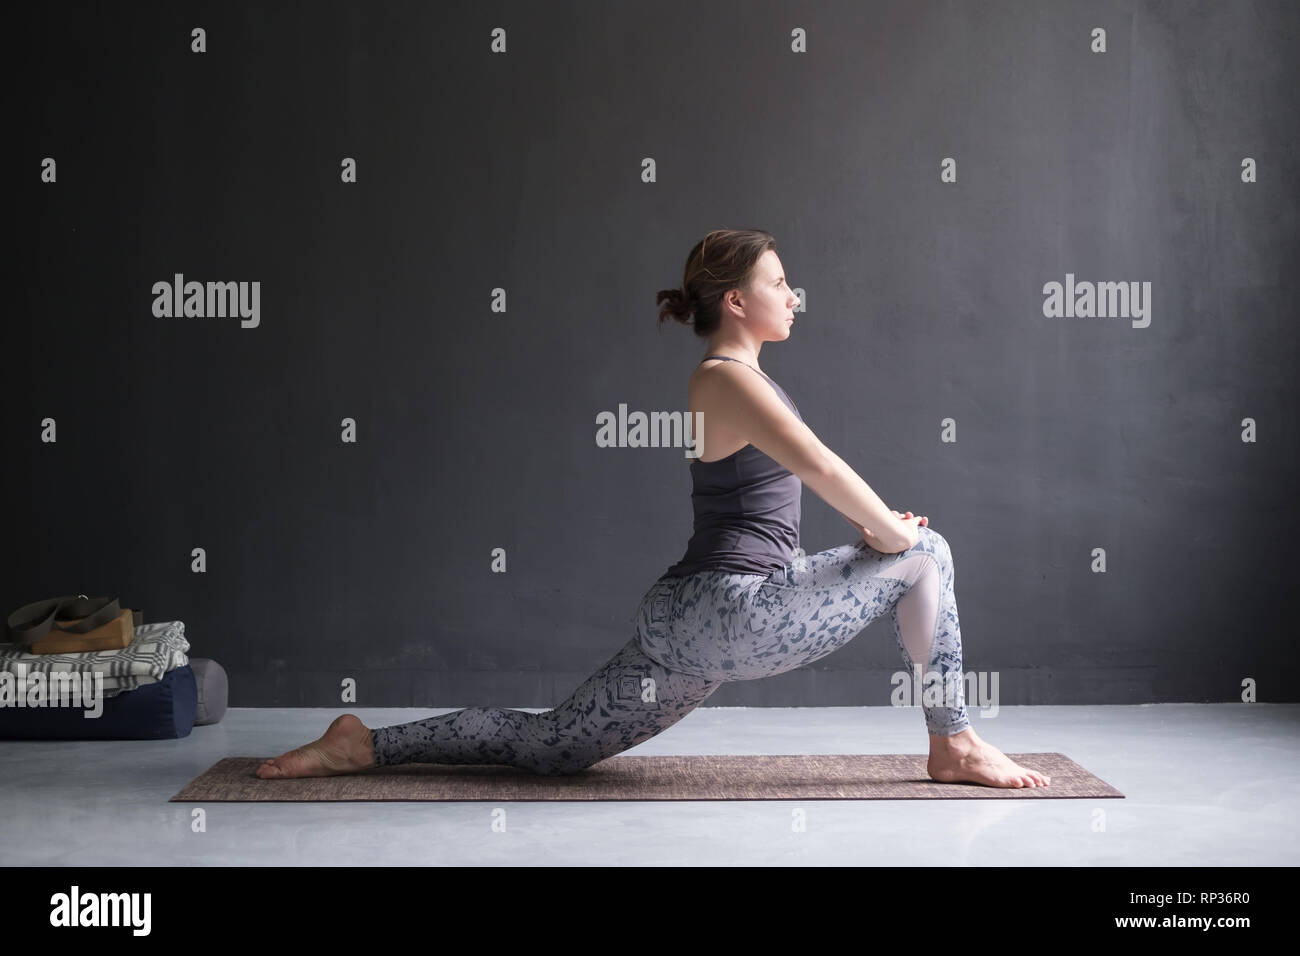 Woman doing Hatha yoga asana Anjaneyasana or low crescent lunge pose isolated, Stock Photo